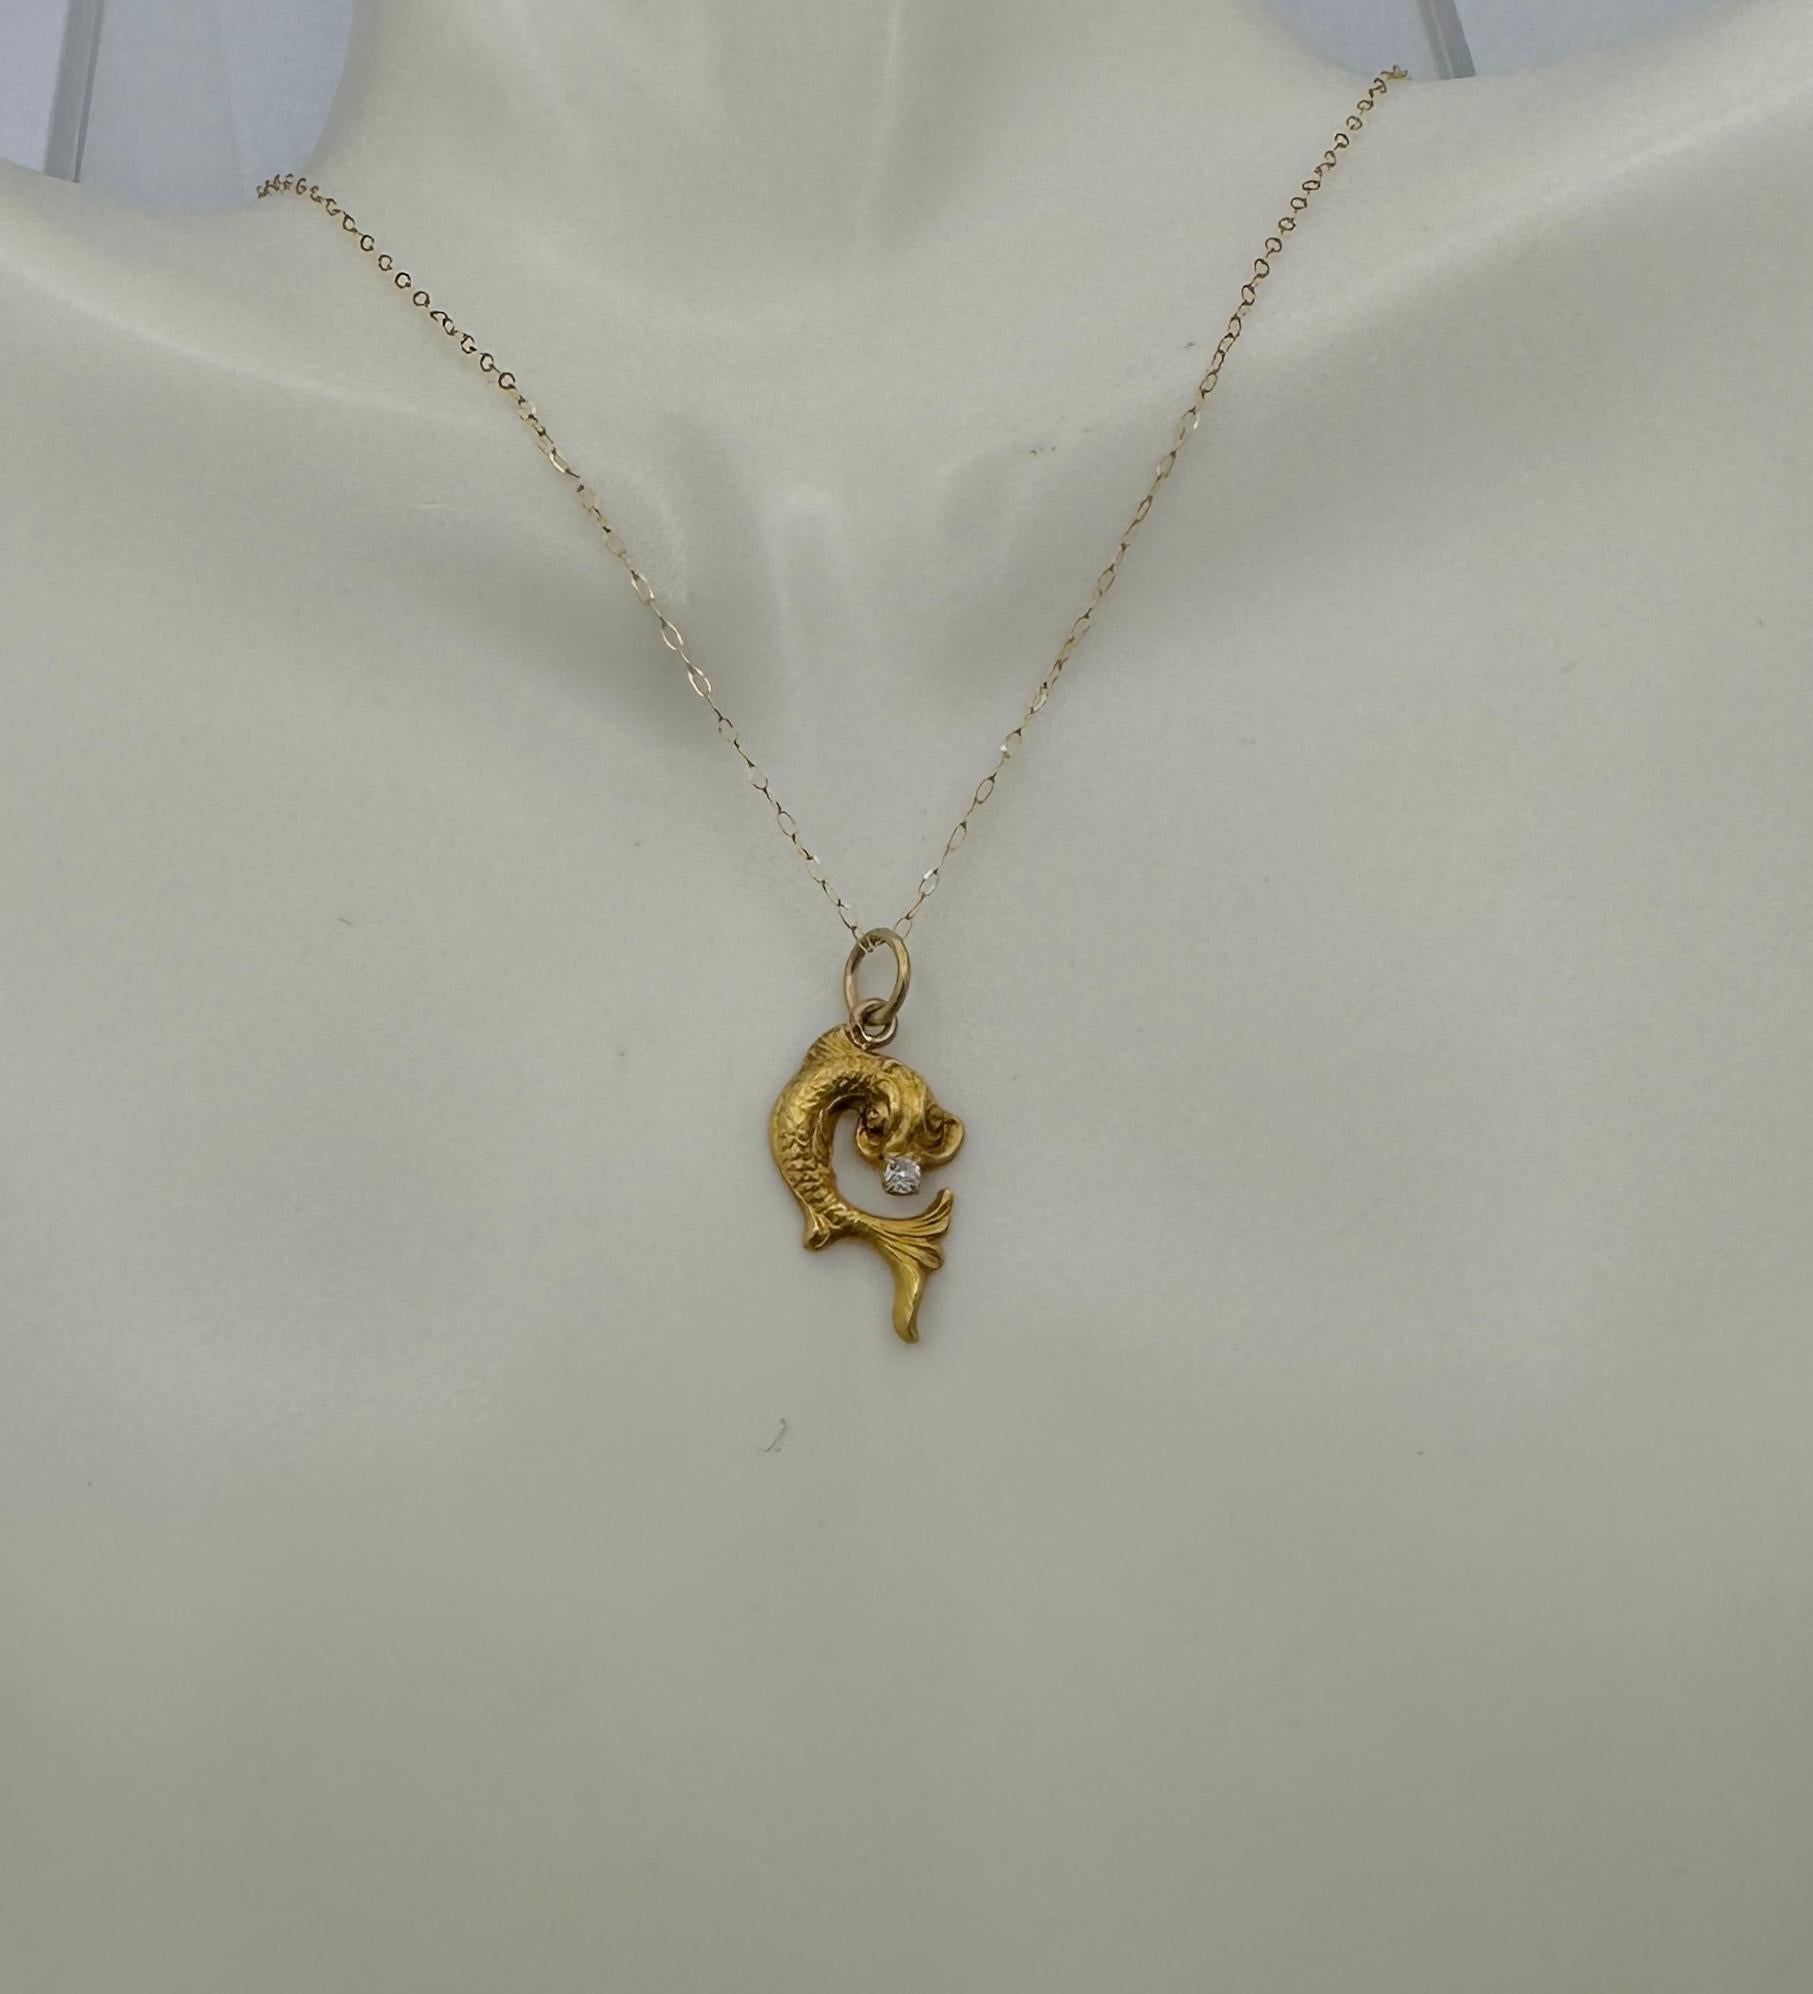 Mythical Fish Sea Creature Dragon Diamond Pendant Necklace Antique Belle Epoque For Sale 1